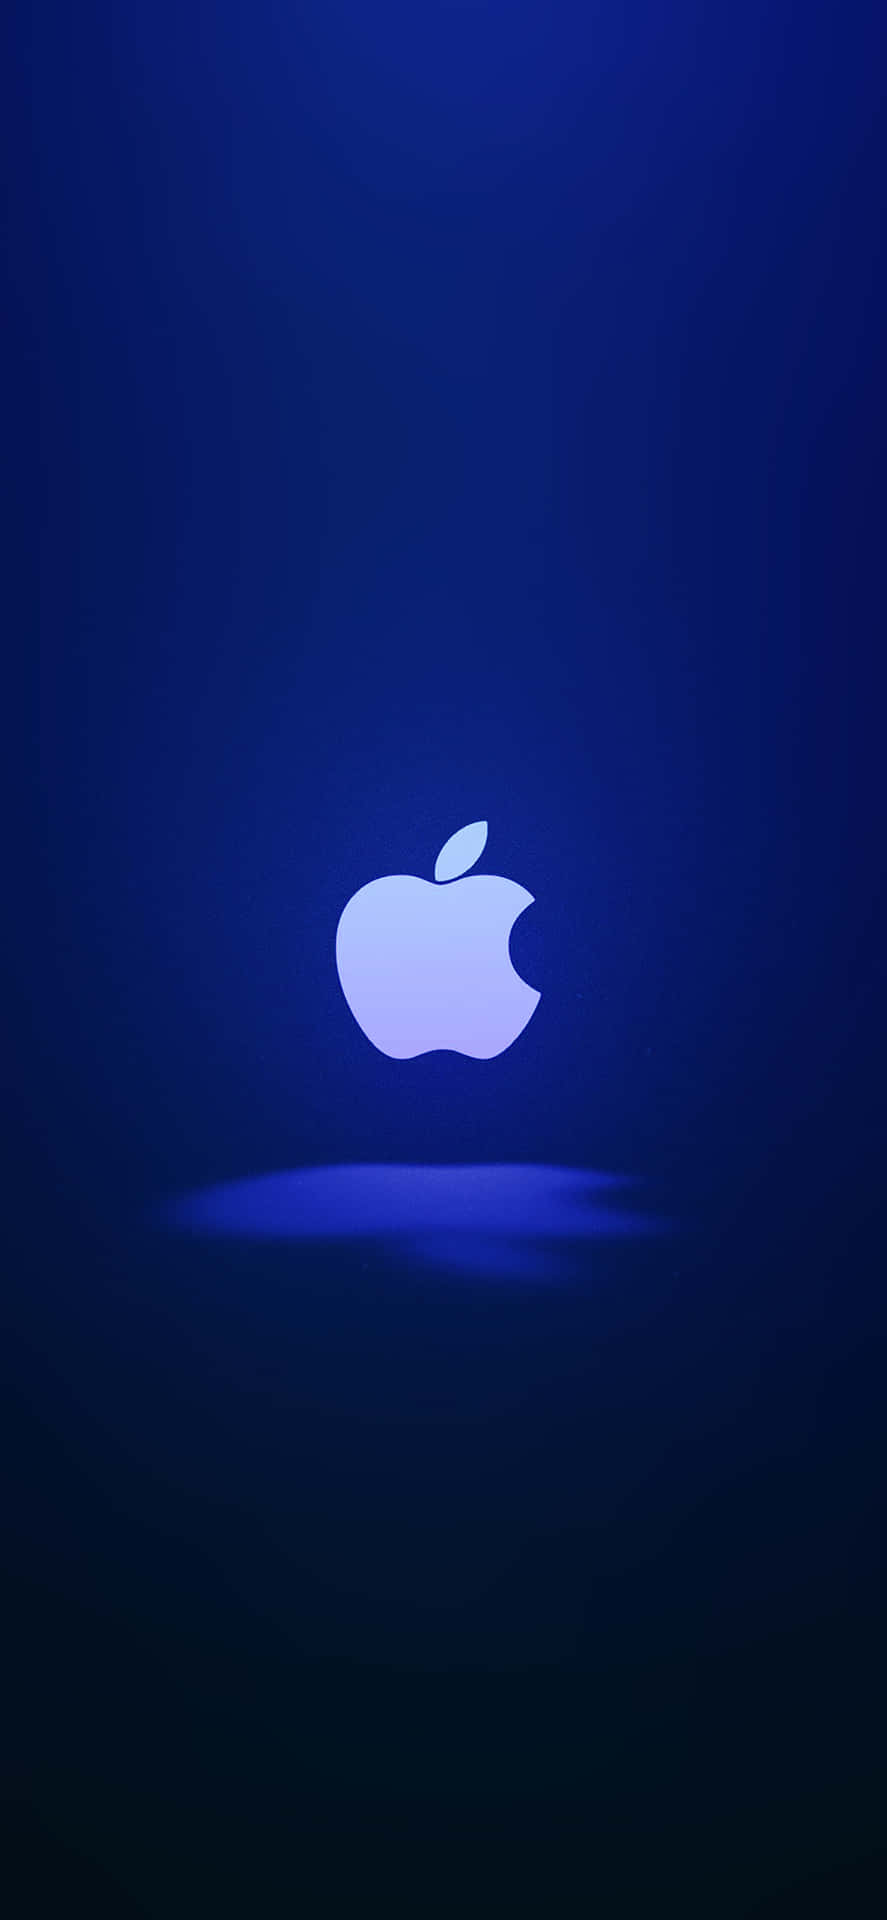 Dasikonische Apple-logo Auf Einem Iphone X. Wallpaper